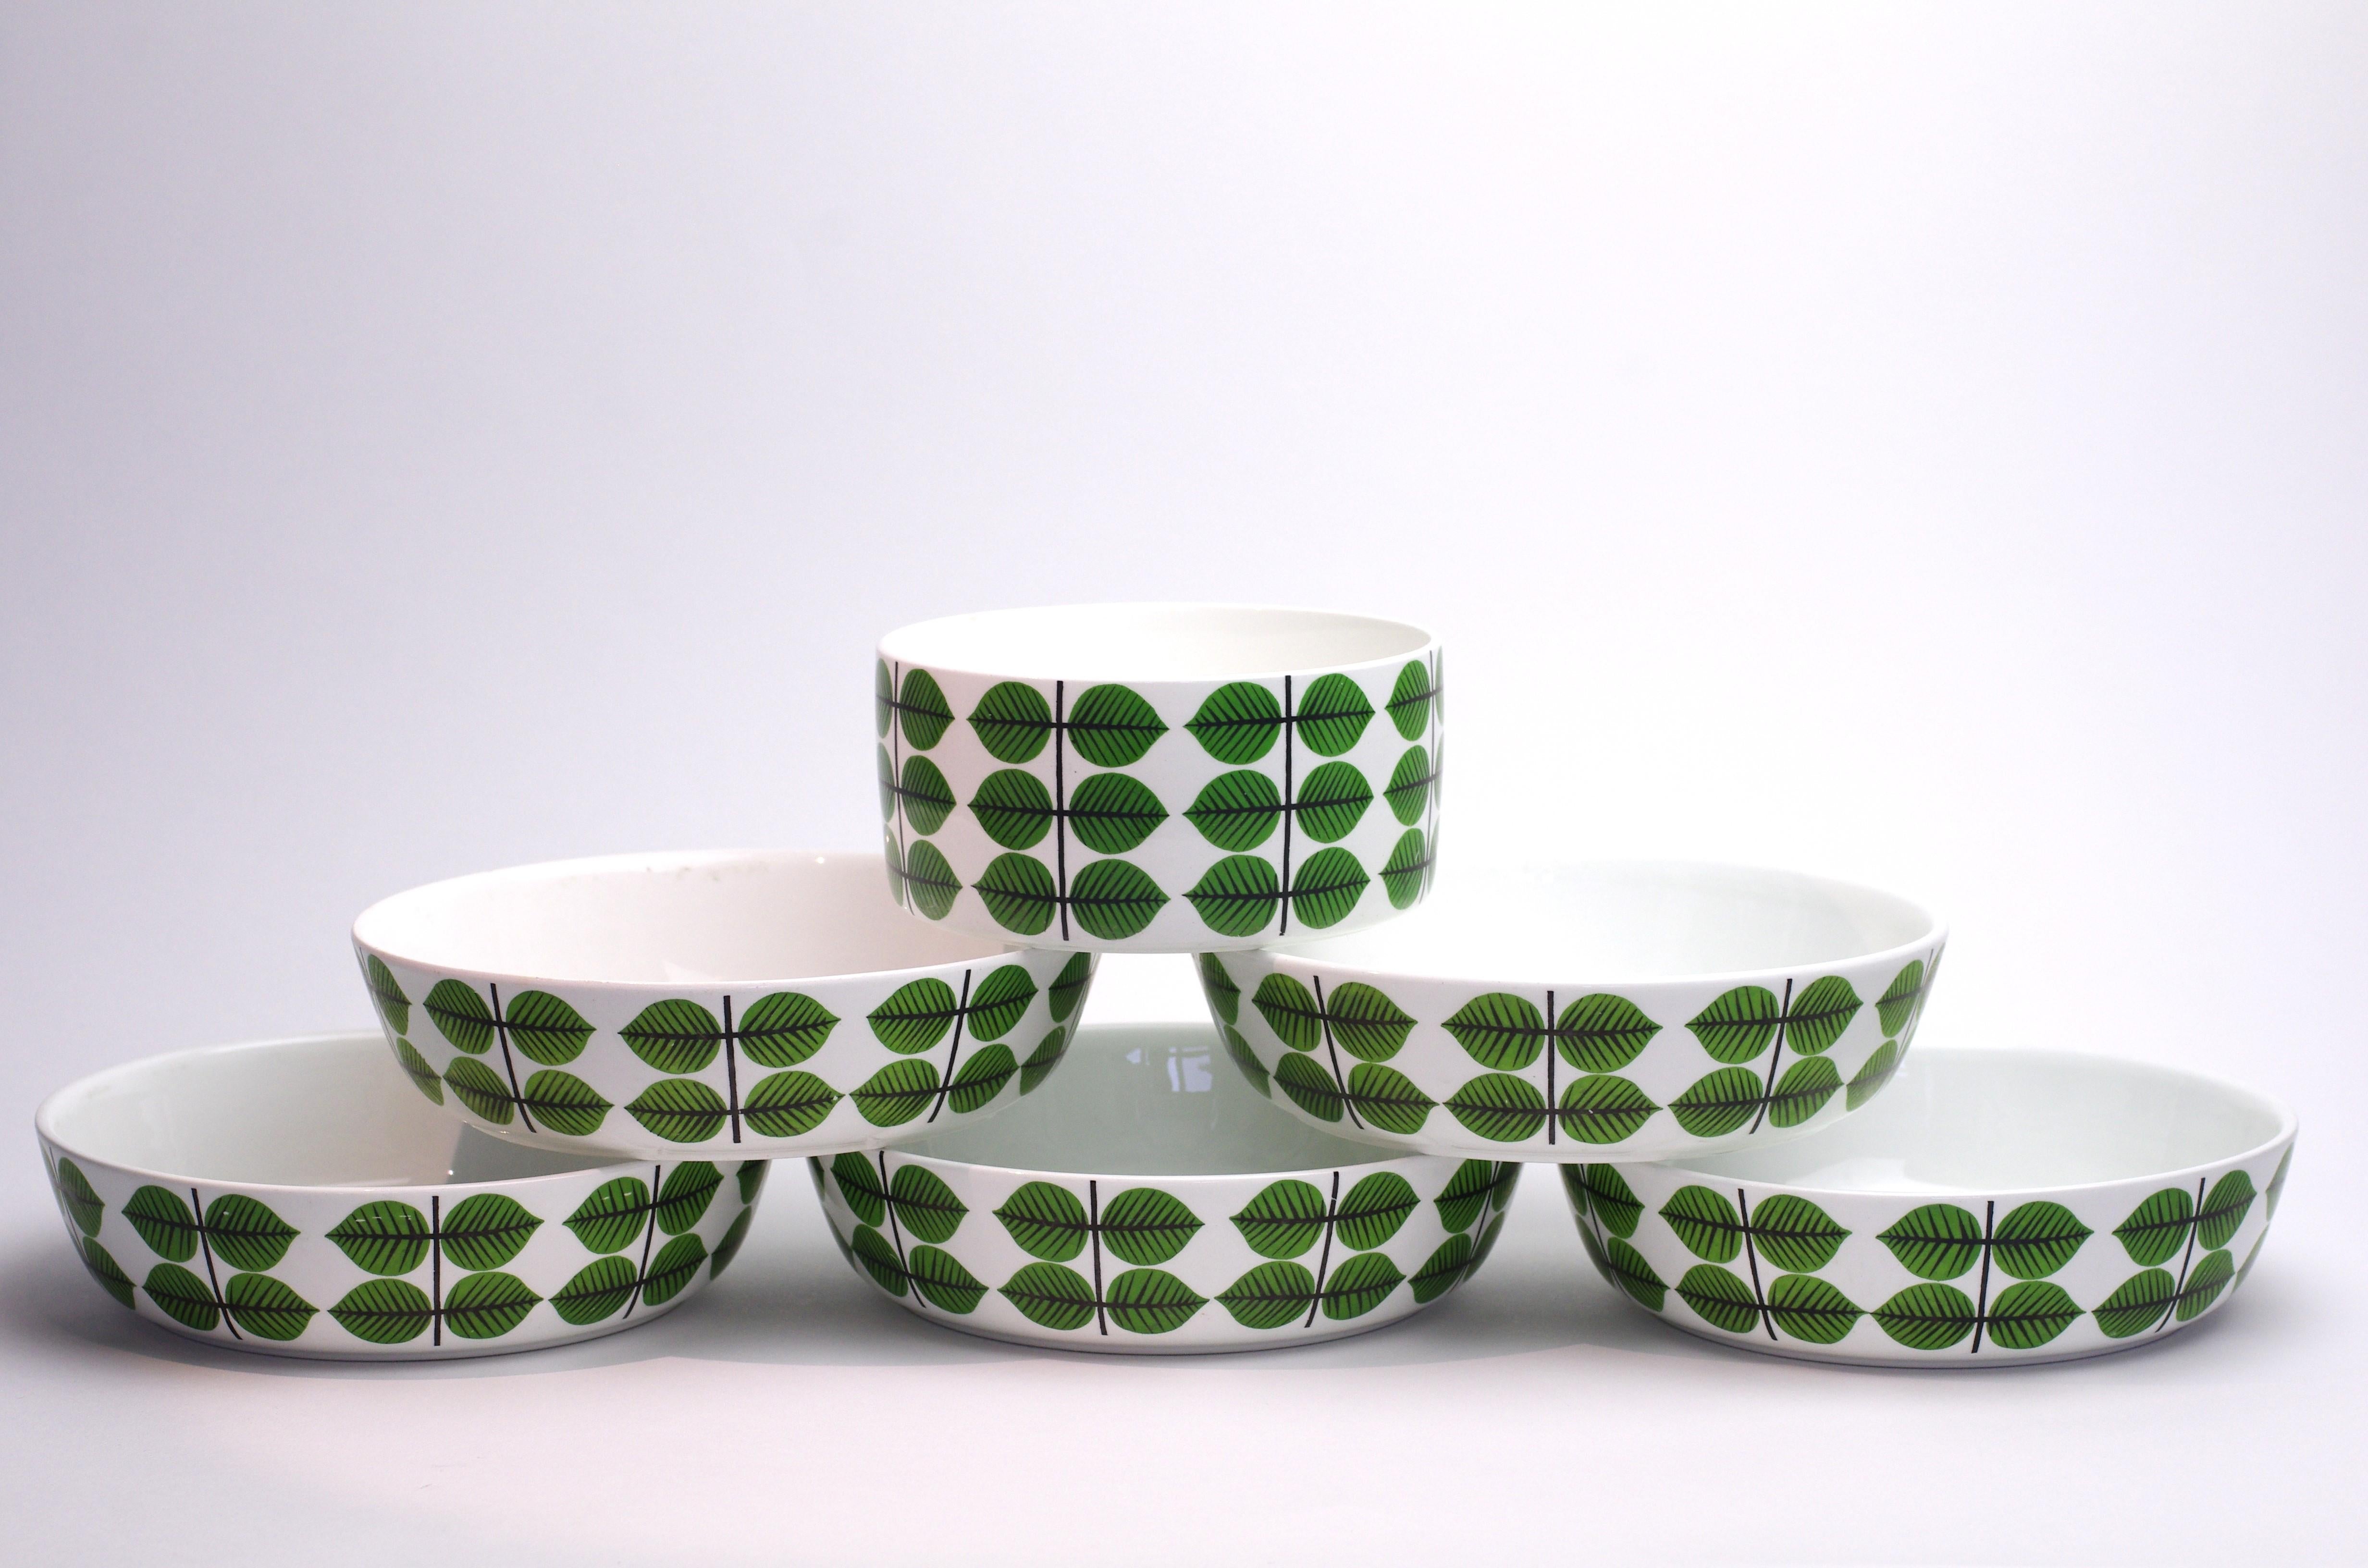 Description du produit :
La série Bersa est sans doute la série de porcelaine la plus célèbre de Scandinavie. La série Bersa associe un ensemble de vaisselle en porcelaine de haute qualité aux formes excellentes à un design graphique extrêmement